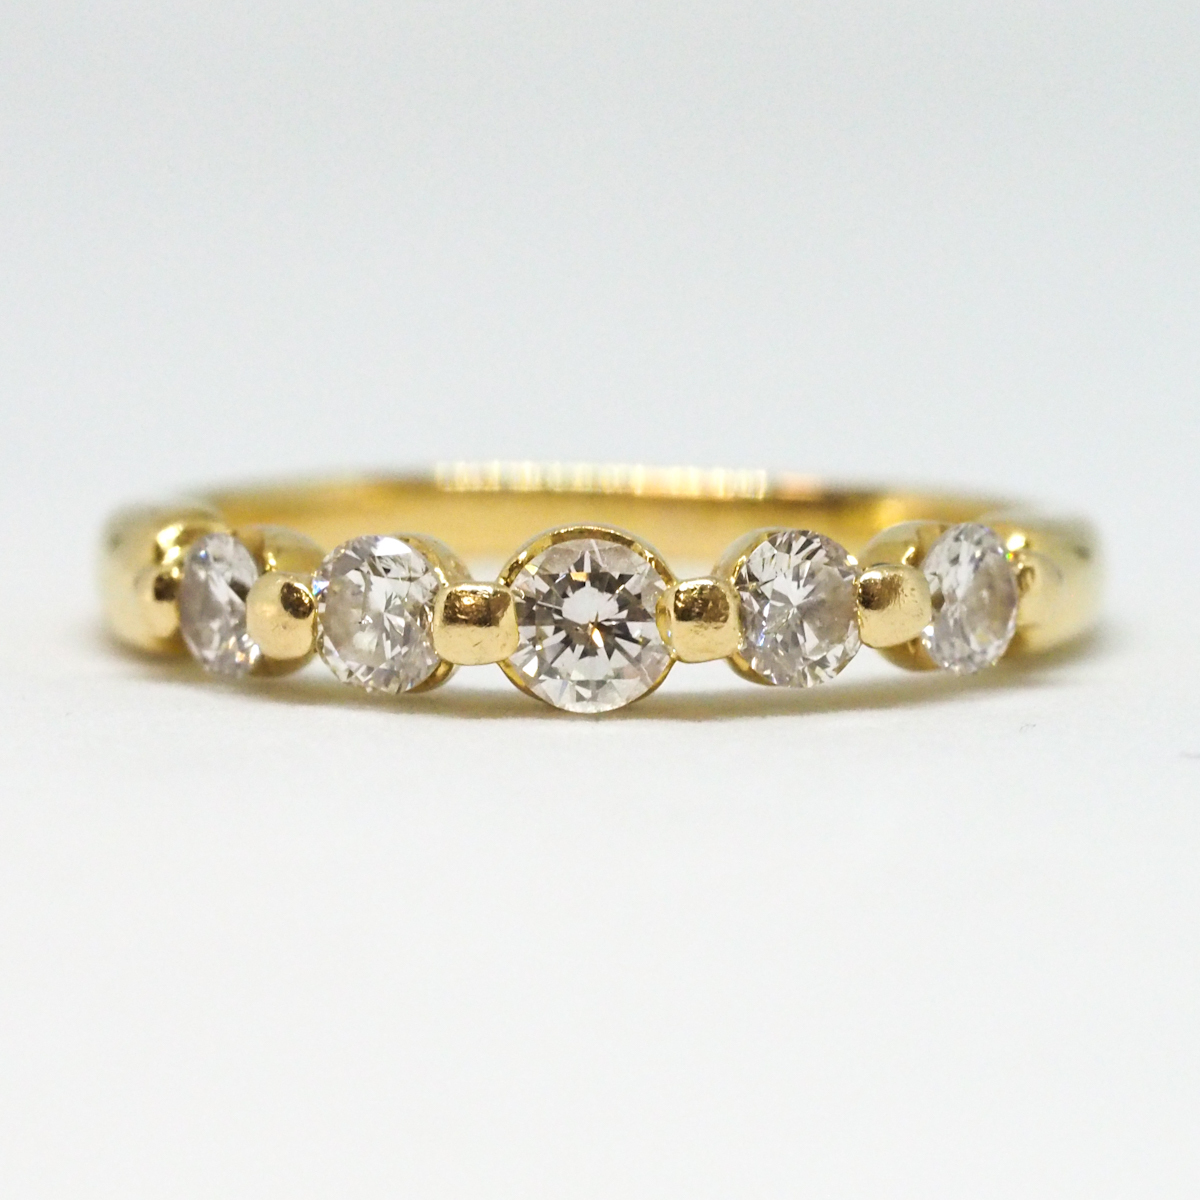 K18 ダイヤモンド 総0.51ct 計5粒 ゴールドリング 2.6g 歪みあり 指輪 アクセサリー